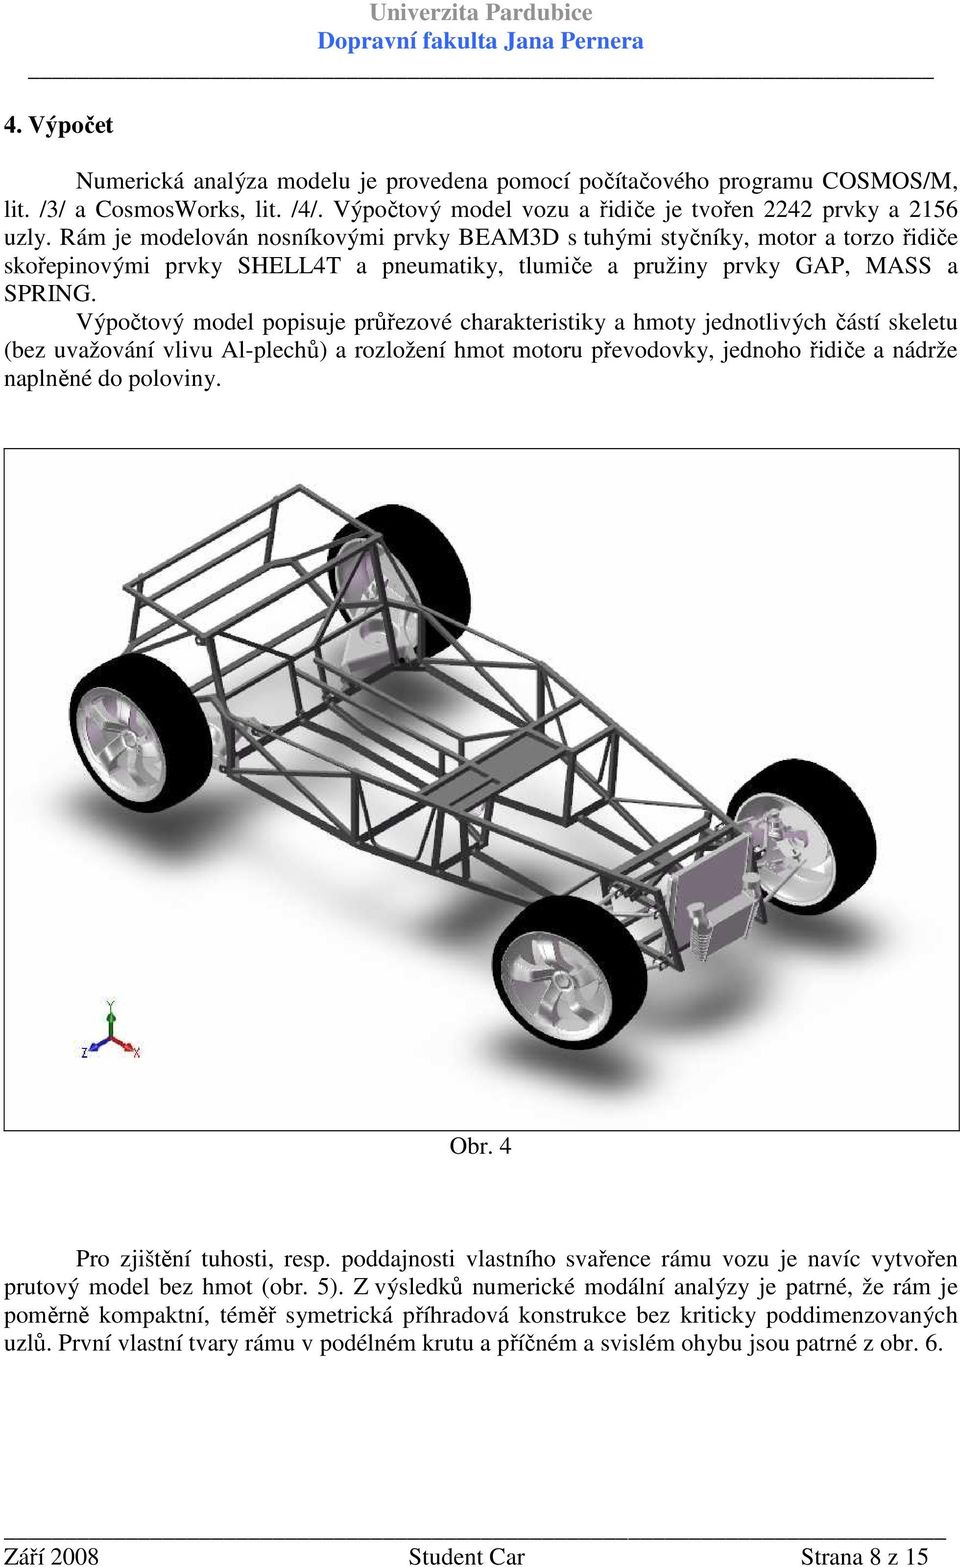 Výpočtový model popisuje průřezové charakteristiky a hmoty jednotlivých částí skeletu (bez uvažování vlivu Al-plechů) a rozložení hmot motoru převodovky, jednoho řidiče a nádrže naplněné do poloviny.